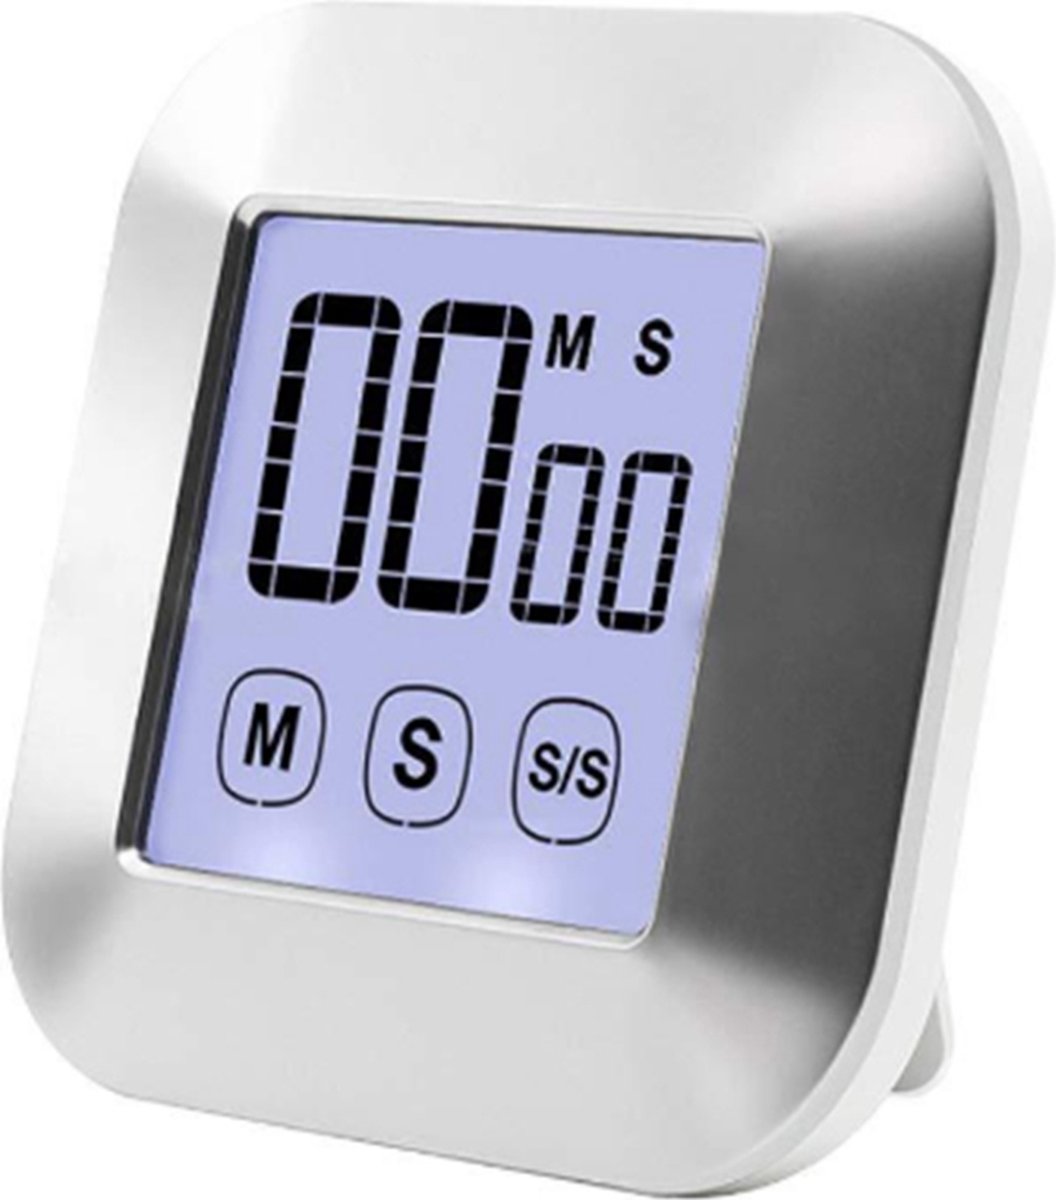 Keuken Timer Digitale Kooktimer, Touch Screen Display Timer met Alarm, Count Down & Up, Grote LCD Timer voor Keuken, Koken, Bakken